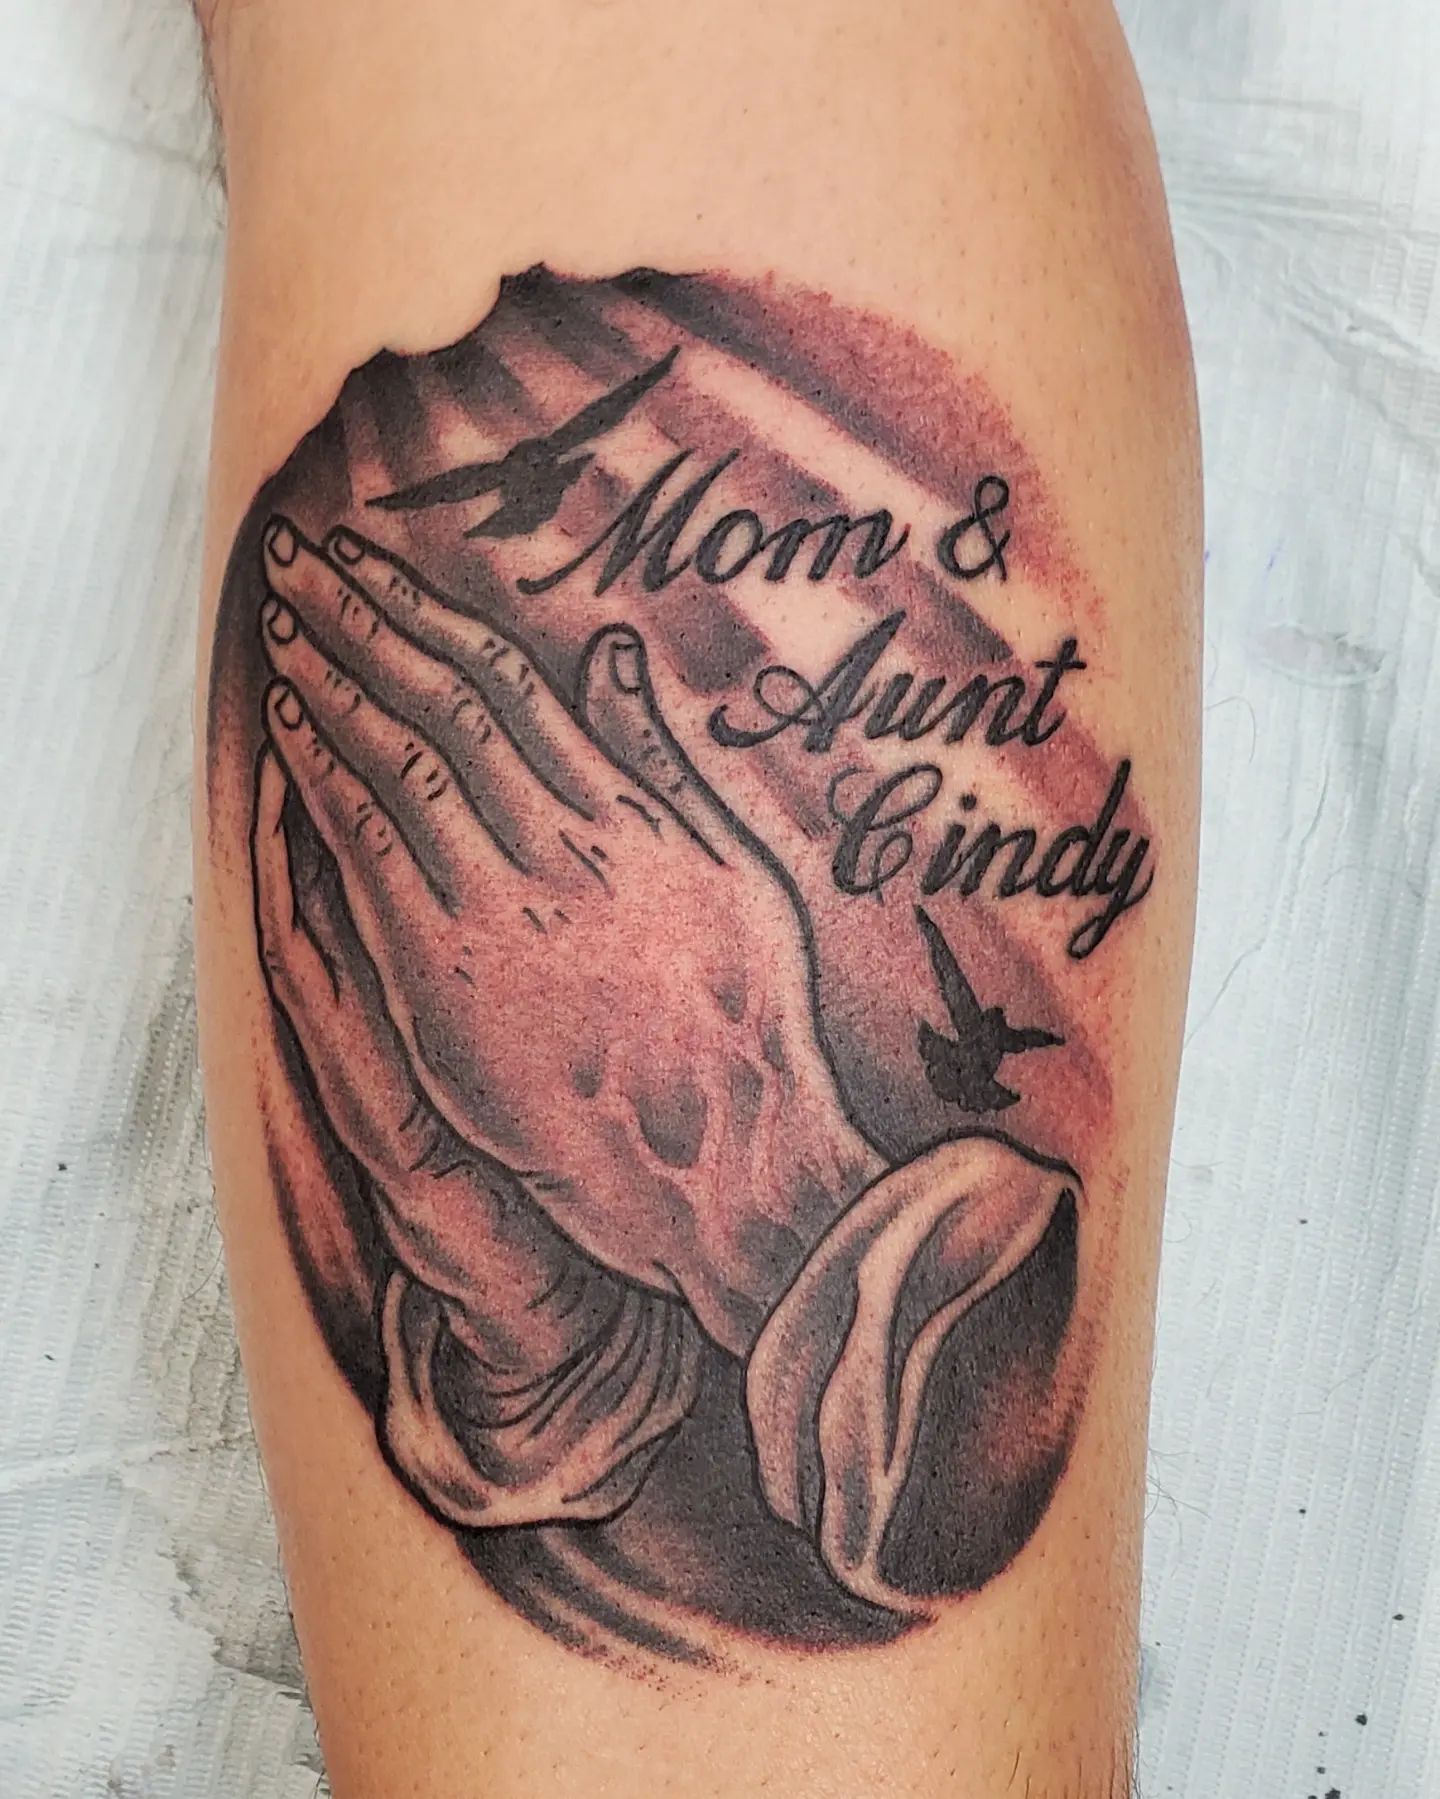 Tatuaje de manos rezando con nombres.